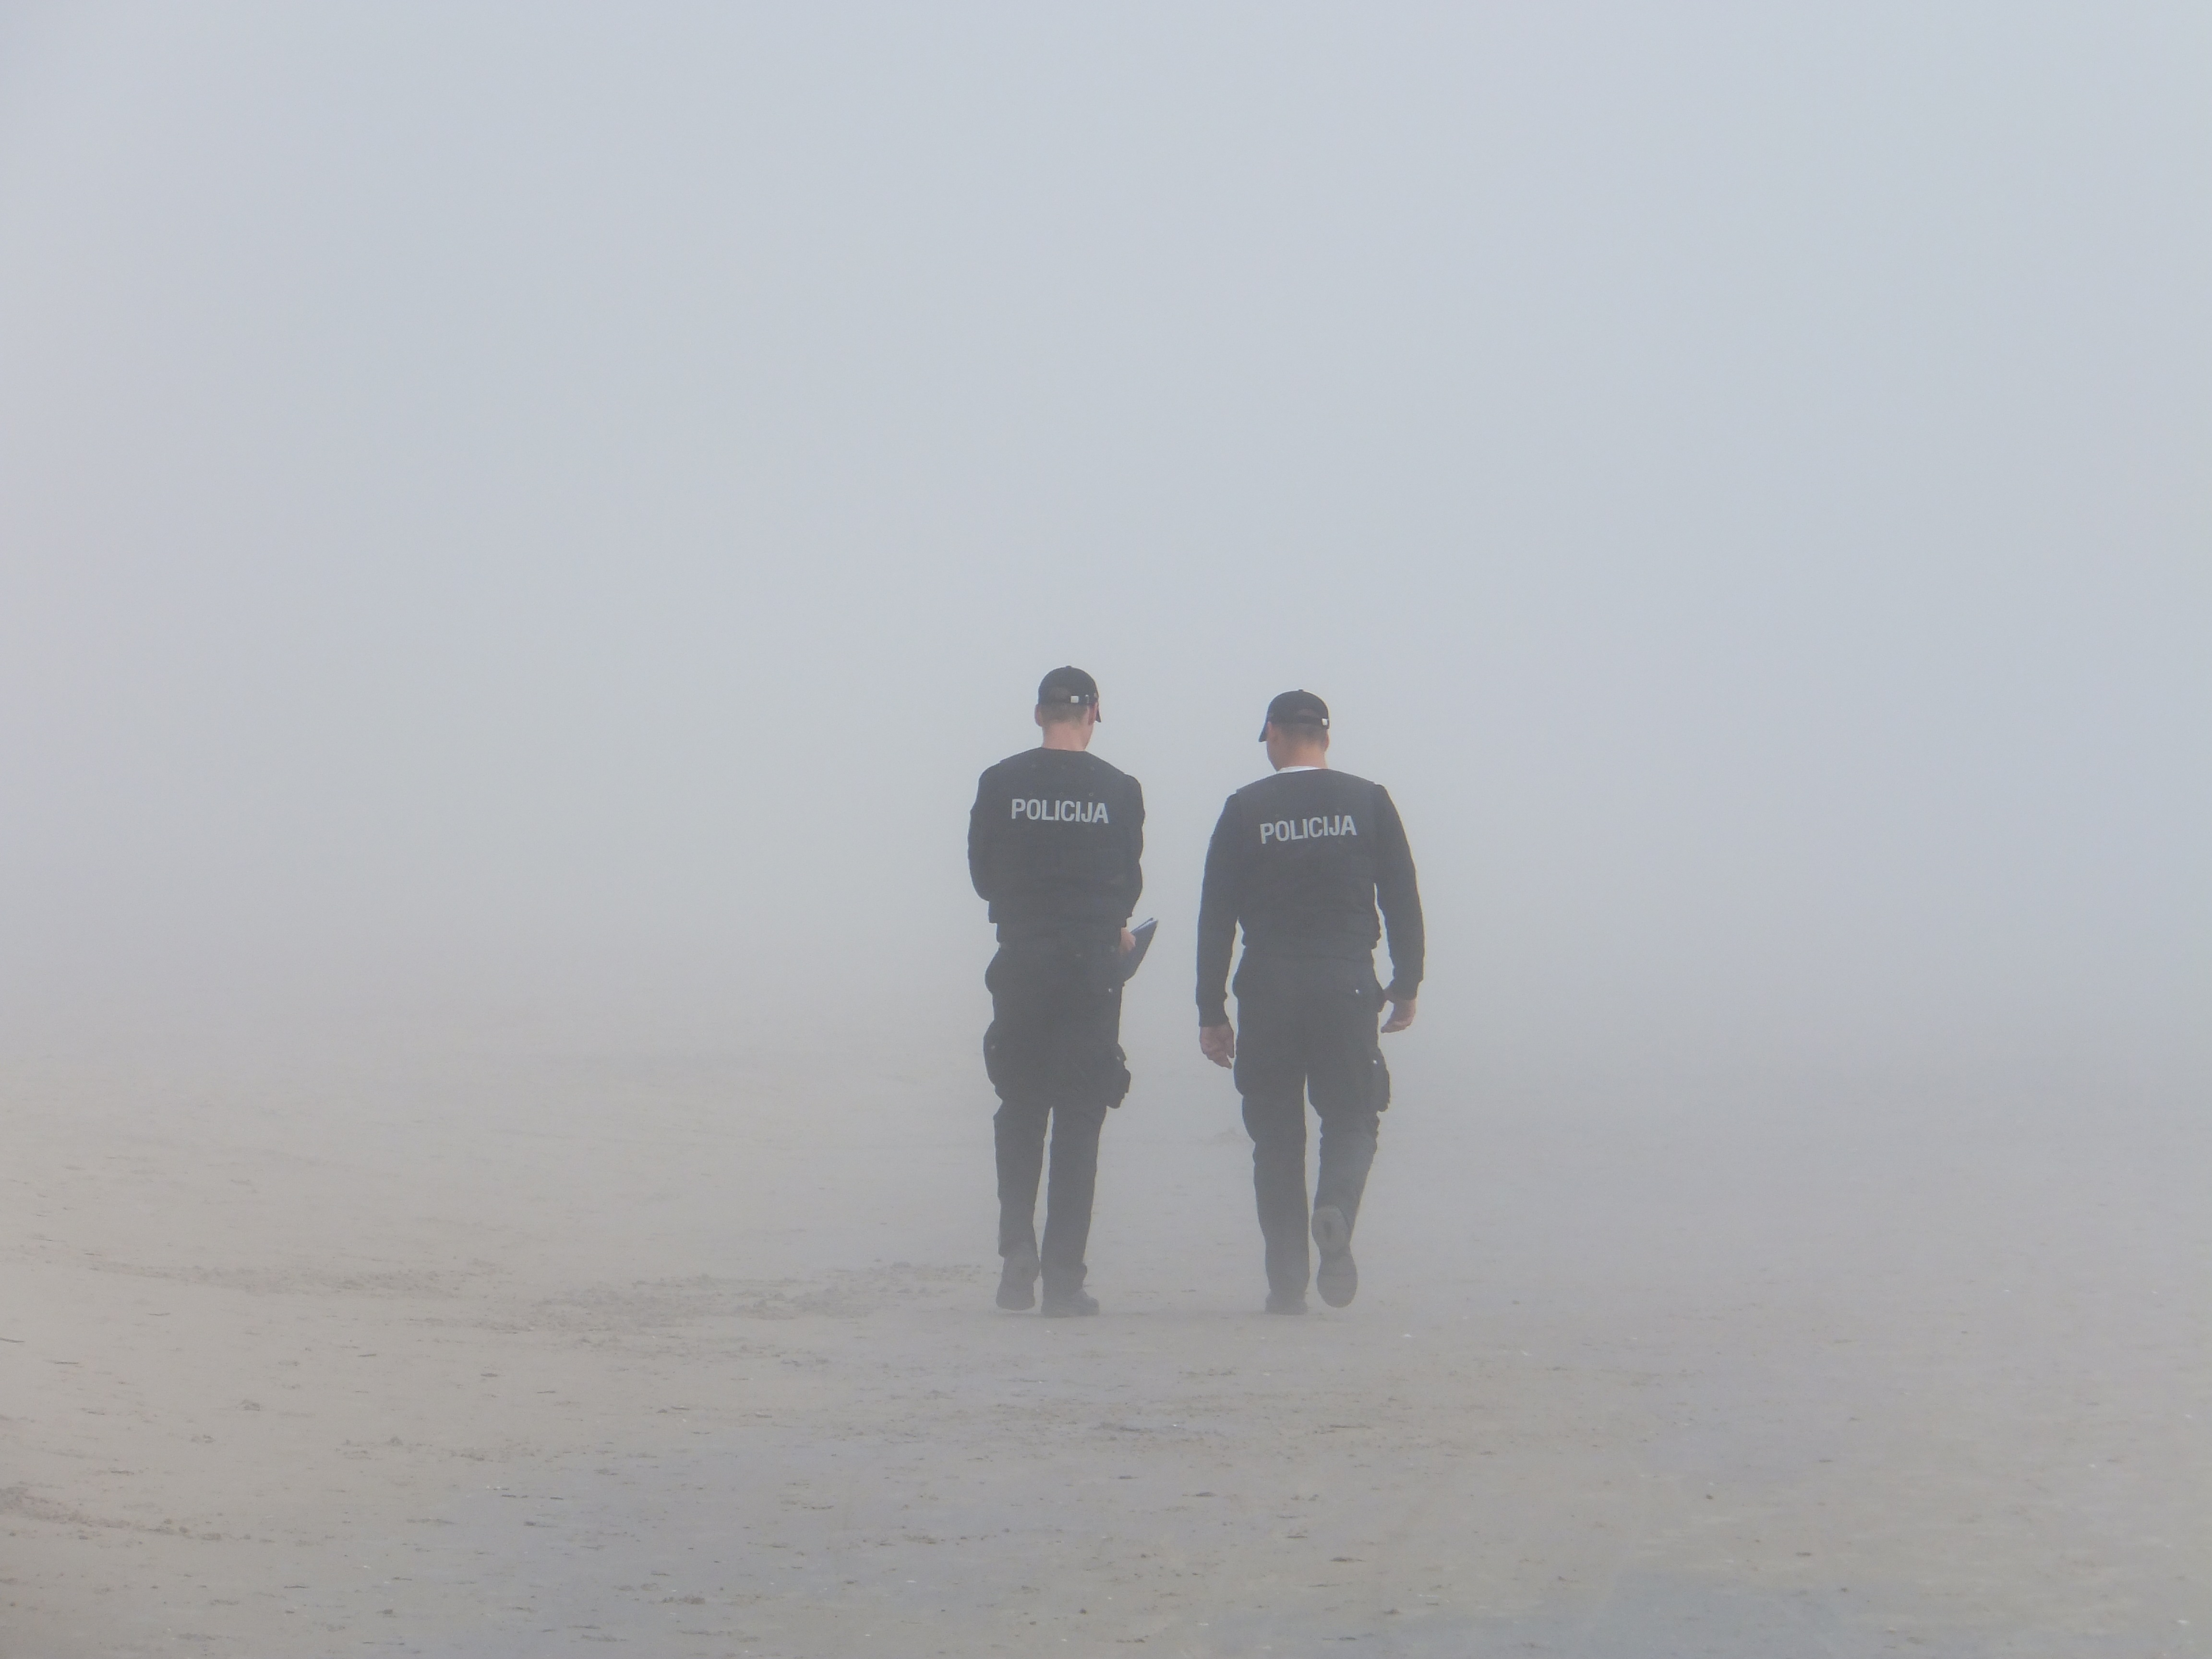 Police in Seaside Fog